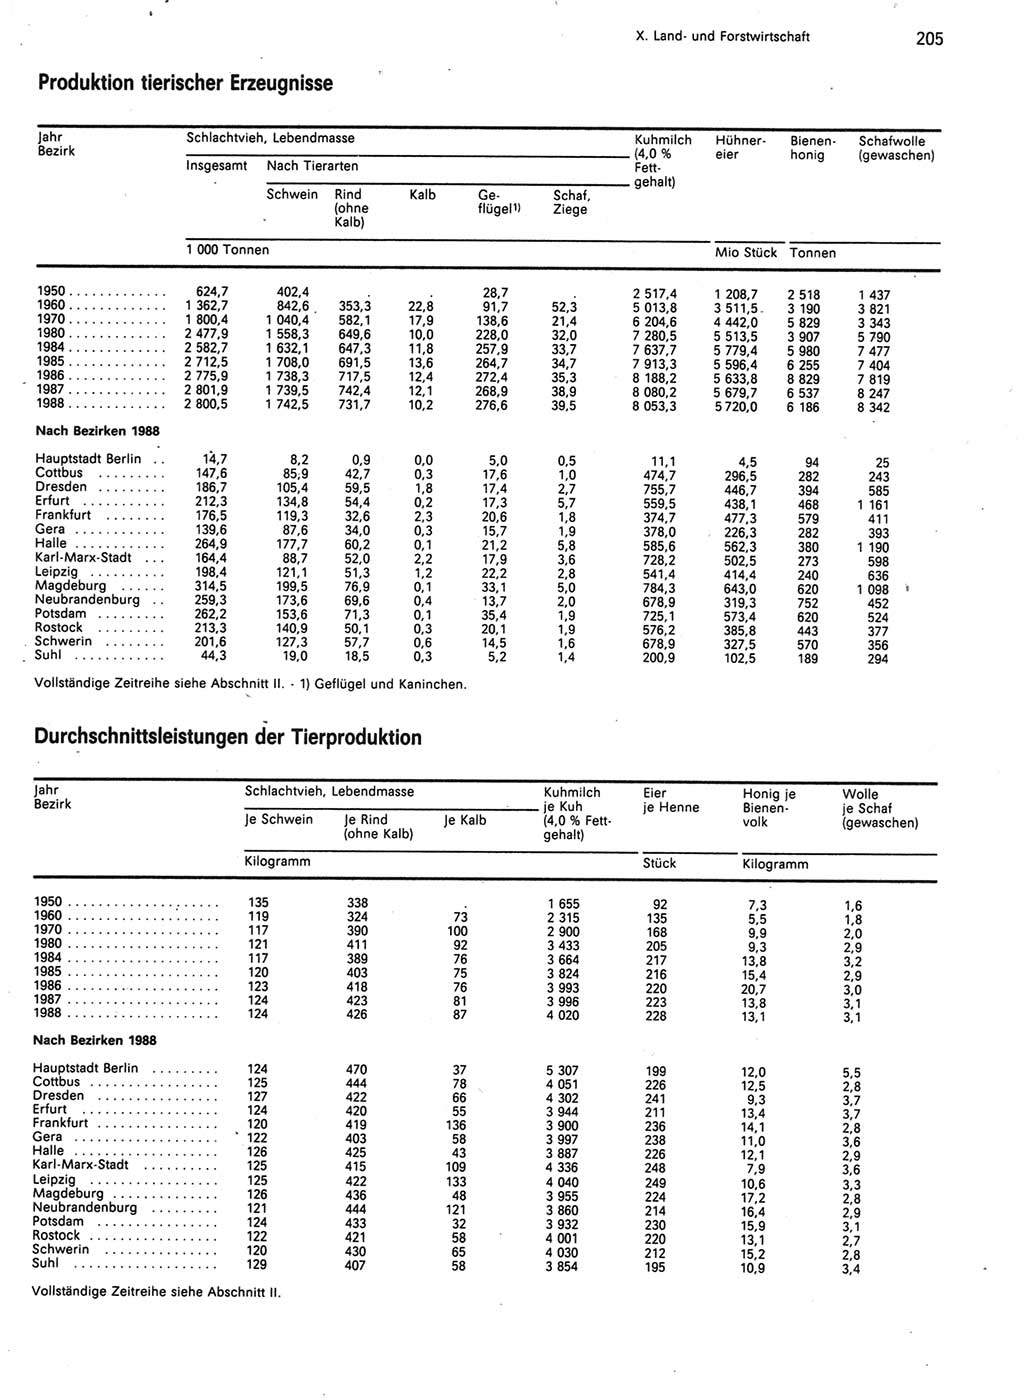 Statistisches Jahrbuch der Deutschen Demokratischen Republik (DDR) 1989, Seite 205 (Stat. Jb. DDR 1989, S. 205)